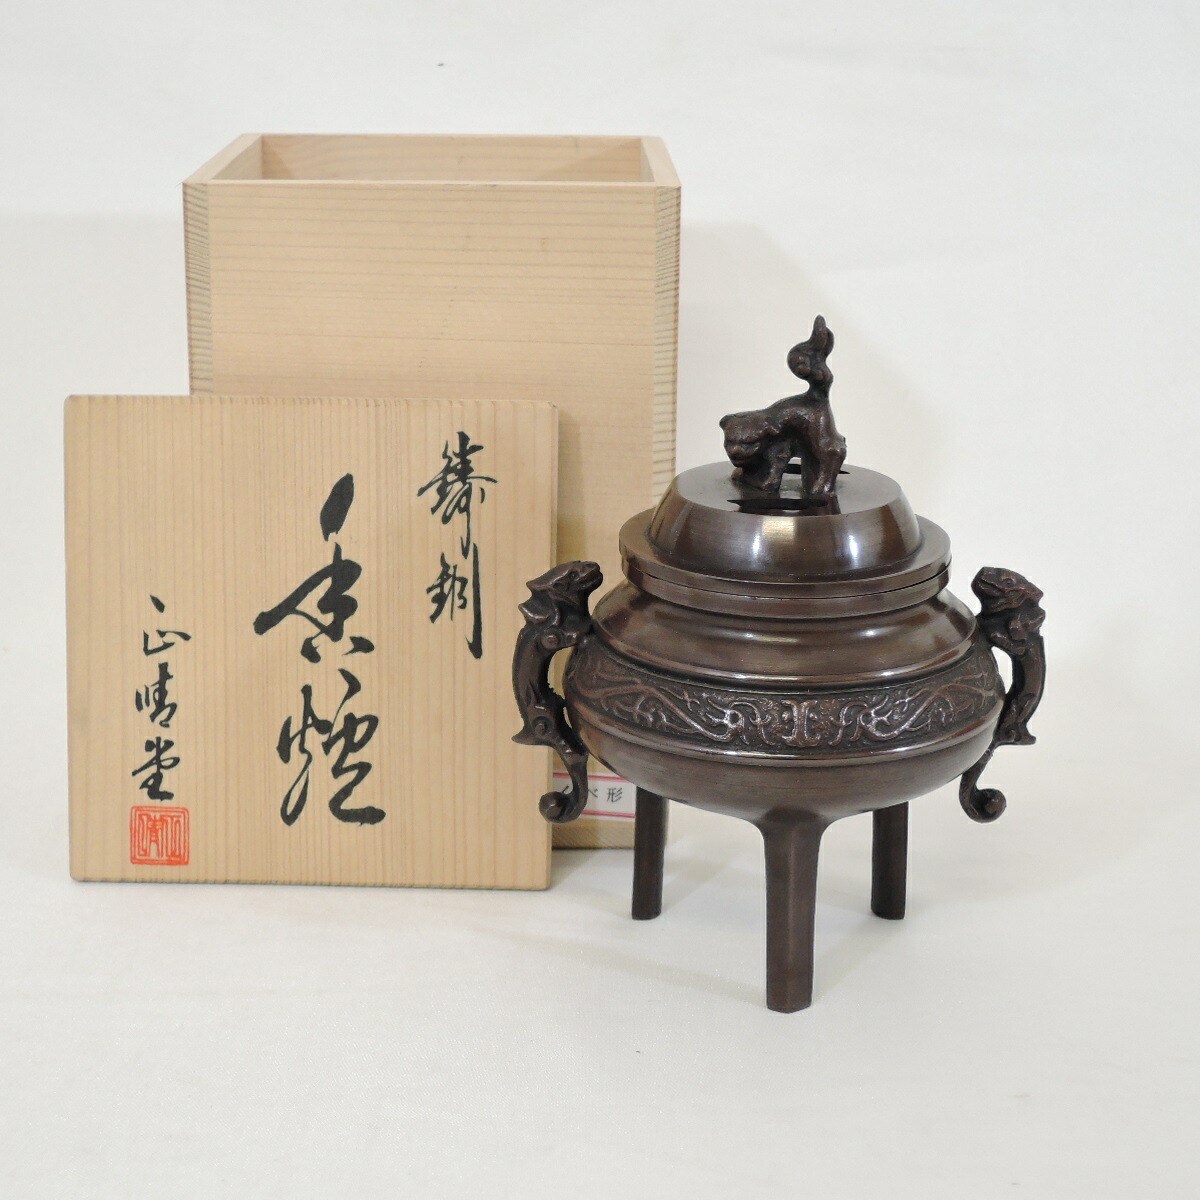 【中古】高岡銅器 正晴堂作 鋳銅 香炉 伝統工芸品 唐銅 茶道具【美品】